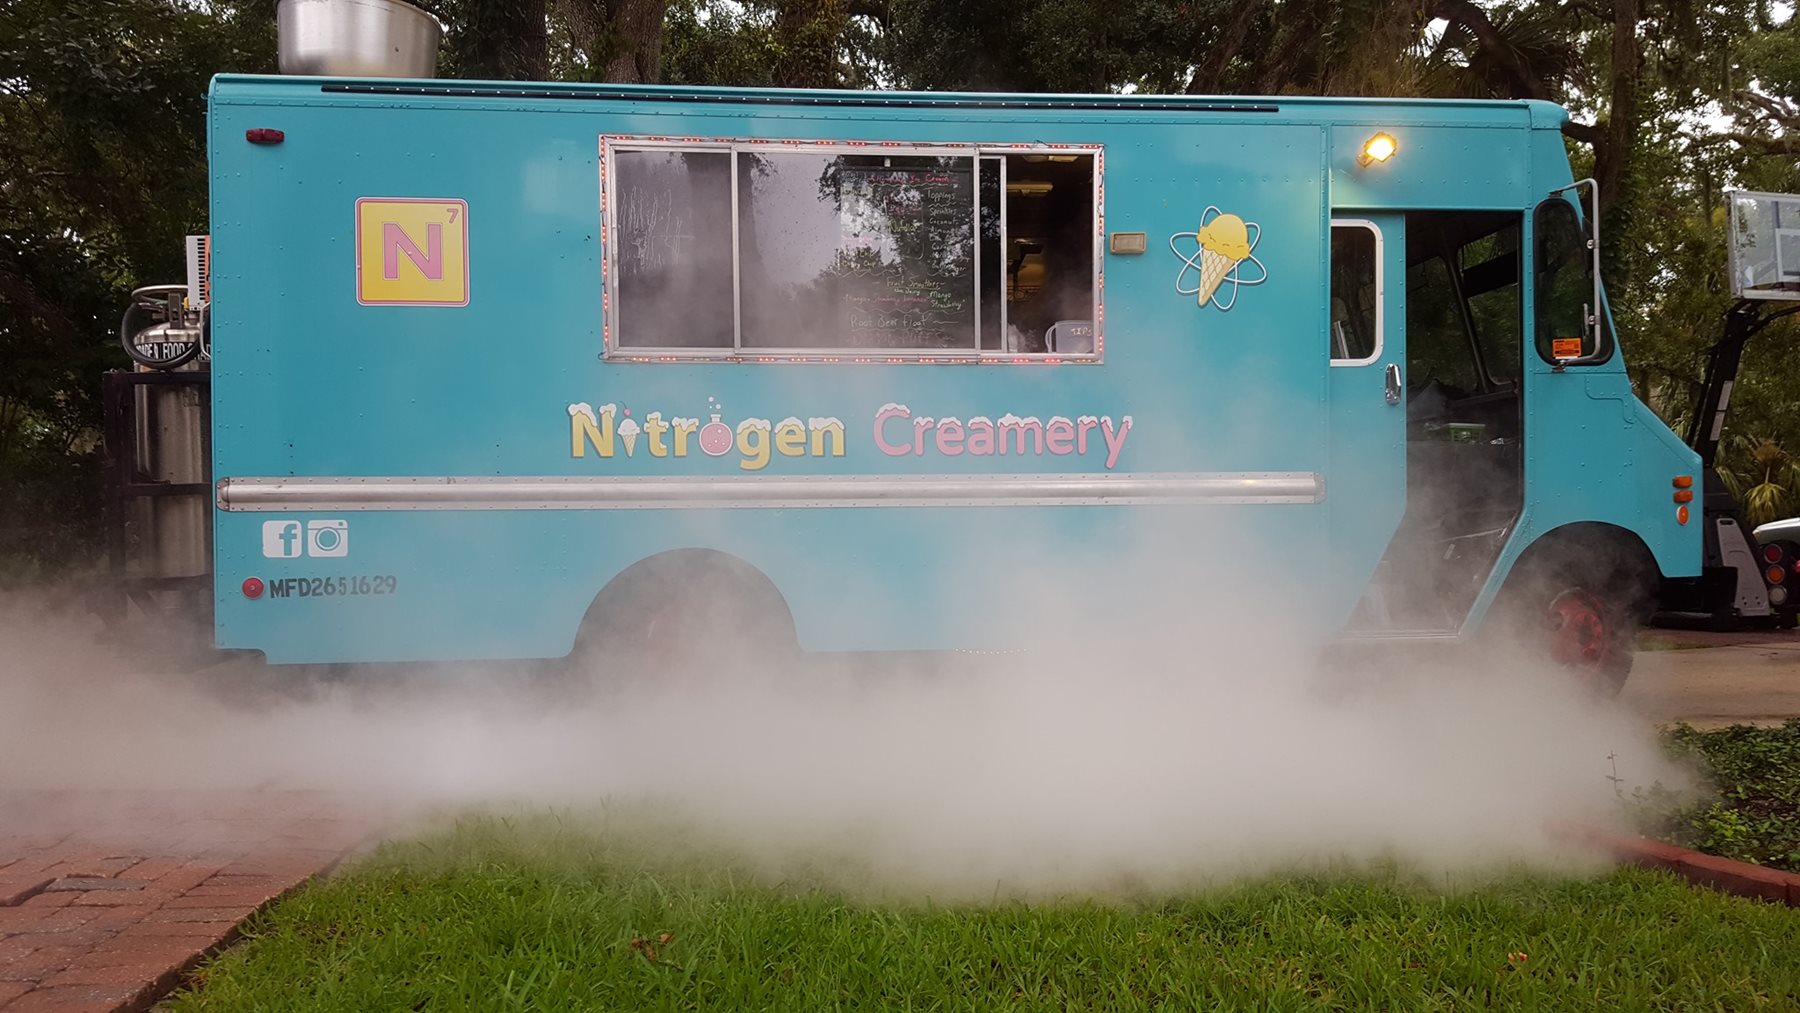 Nitrogen Creamery